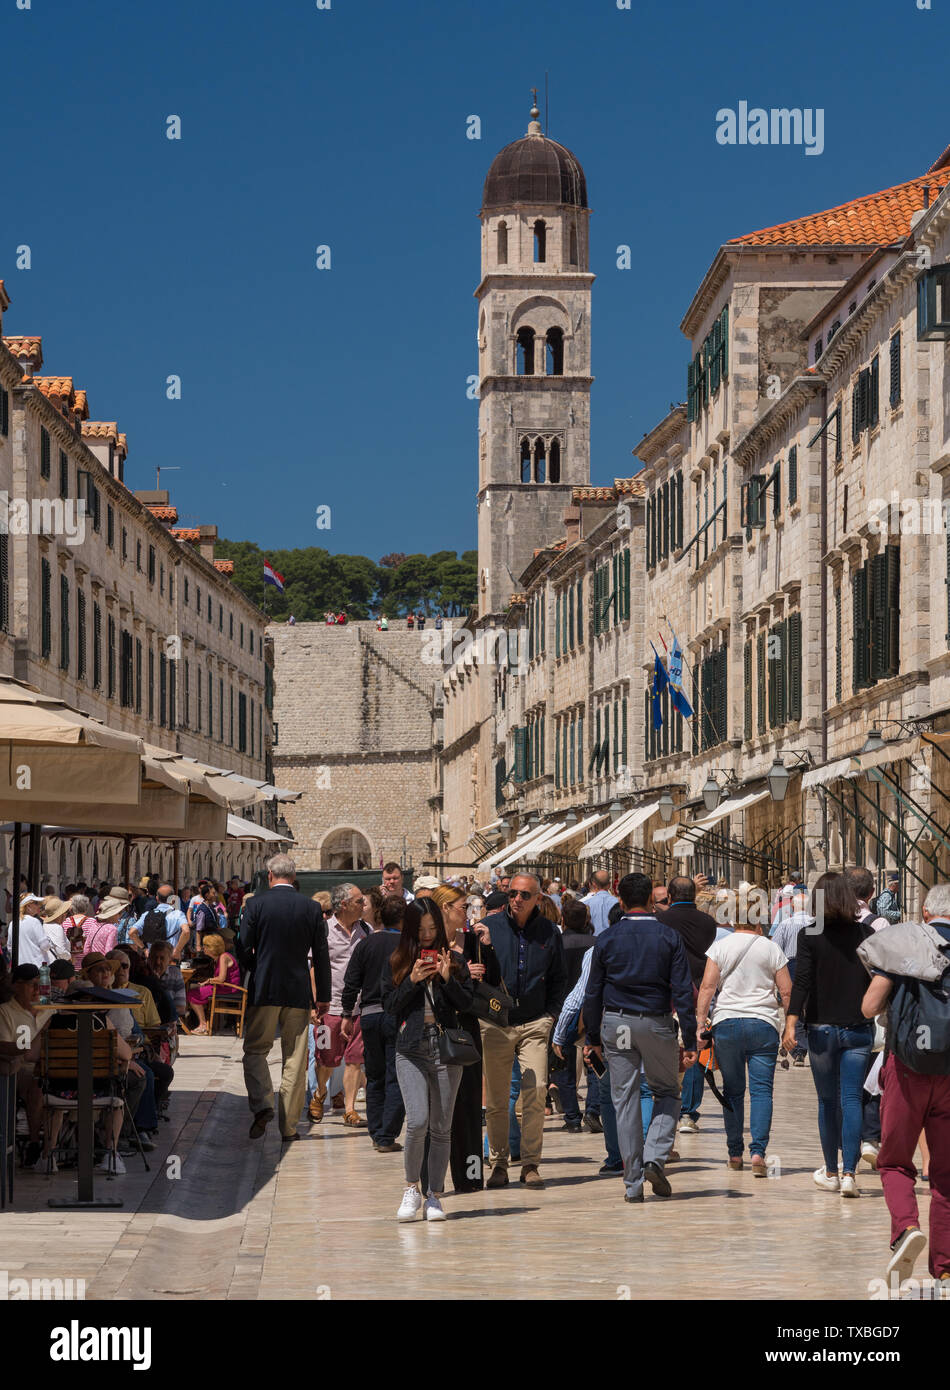 Des foules de touristes dans la vieille ville de Dubrovnik en Croatie Banque D'Images